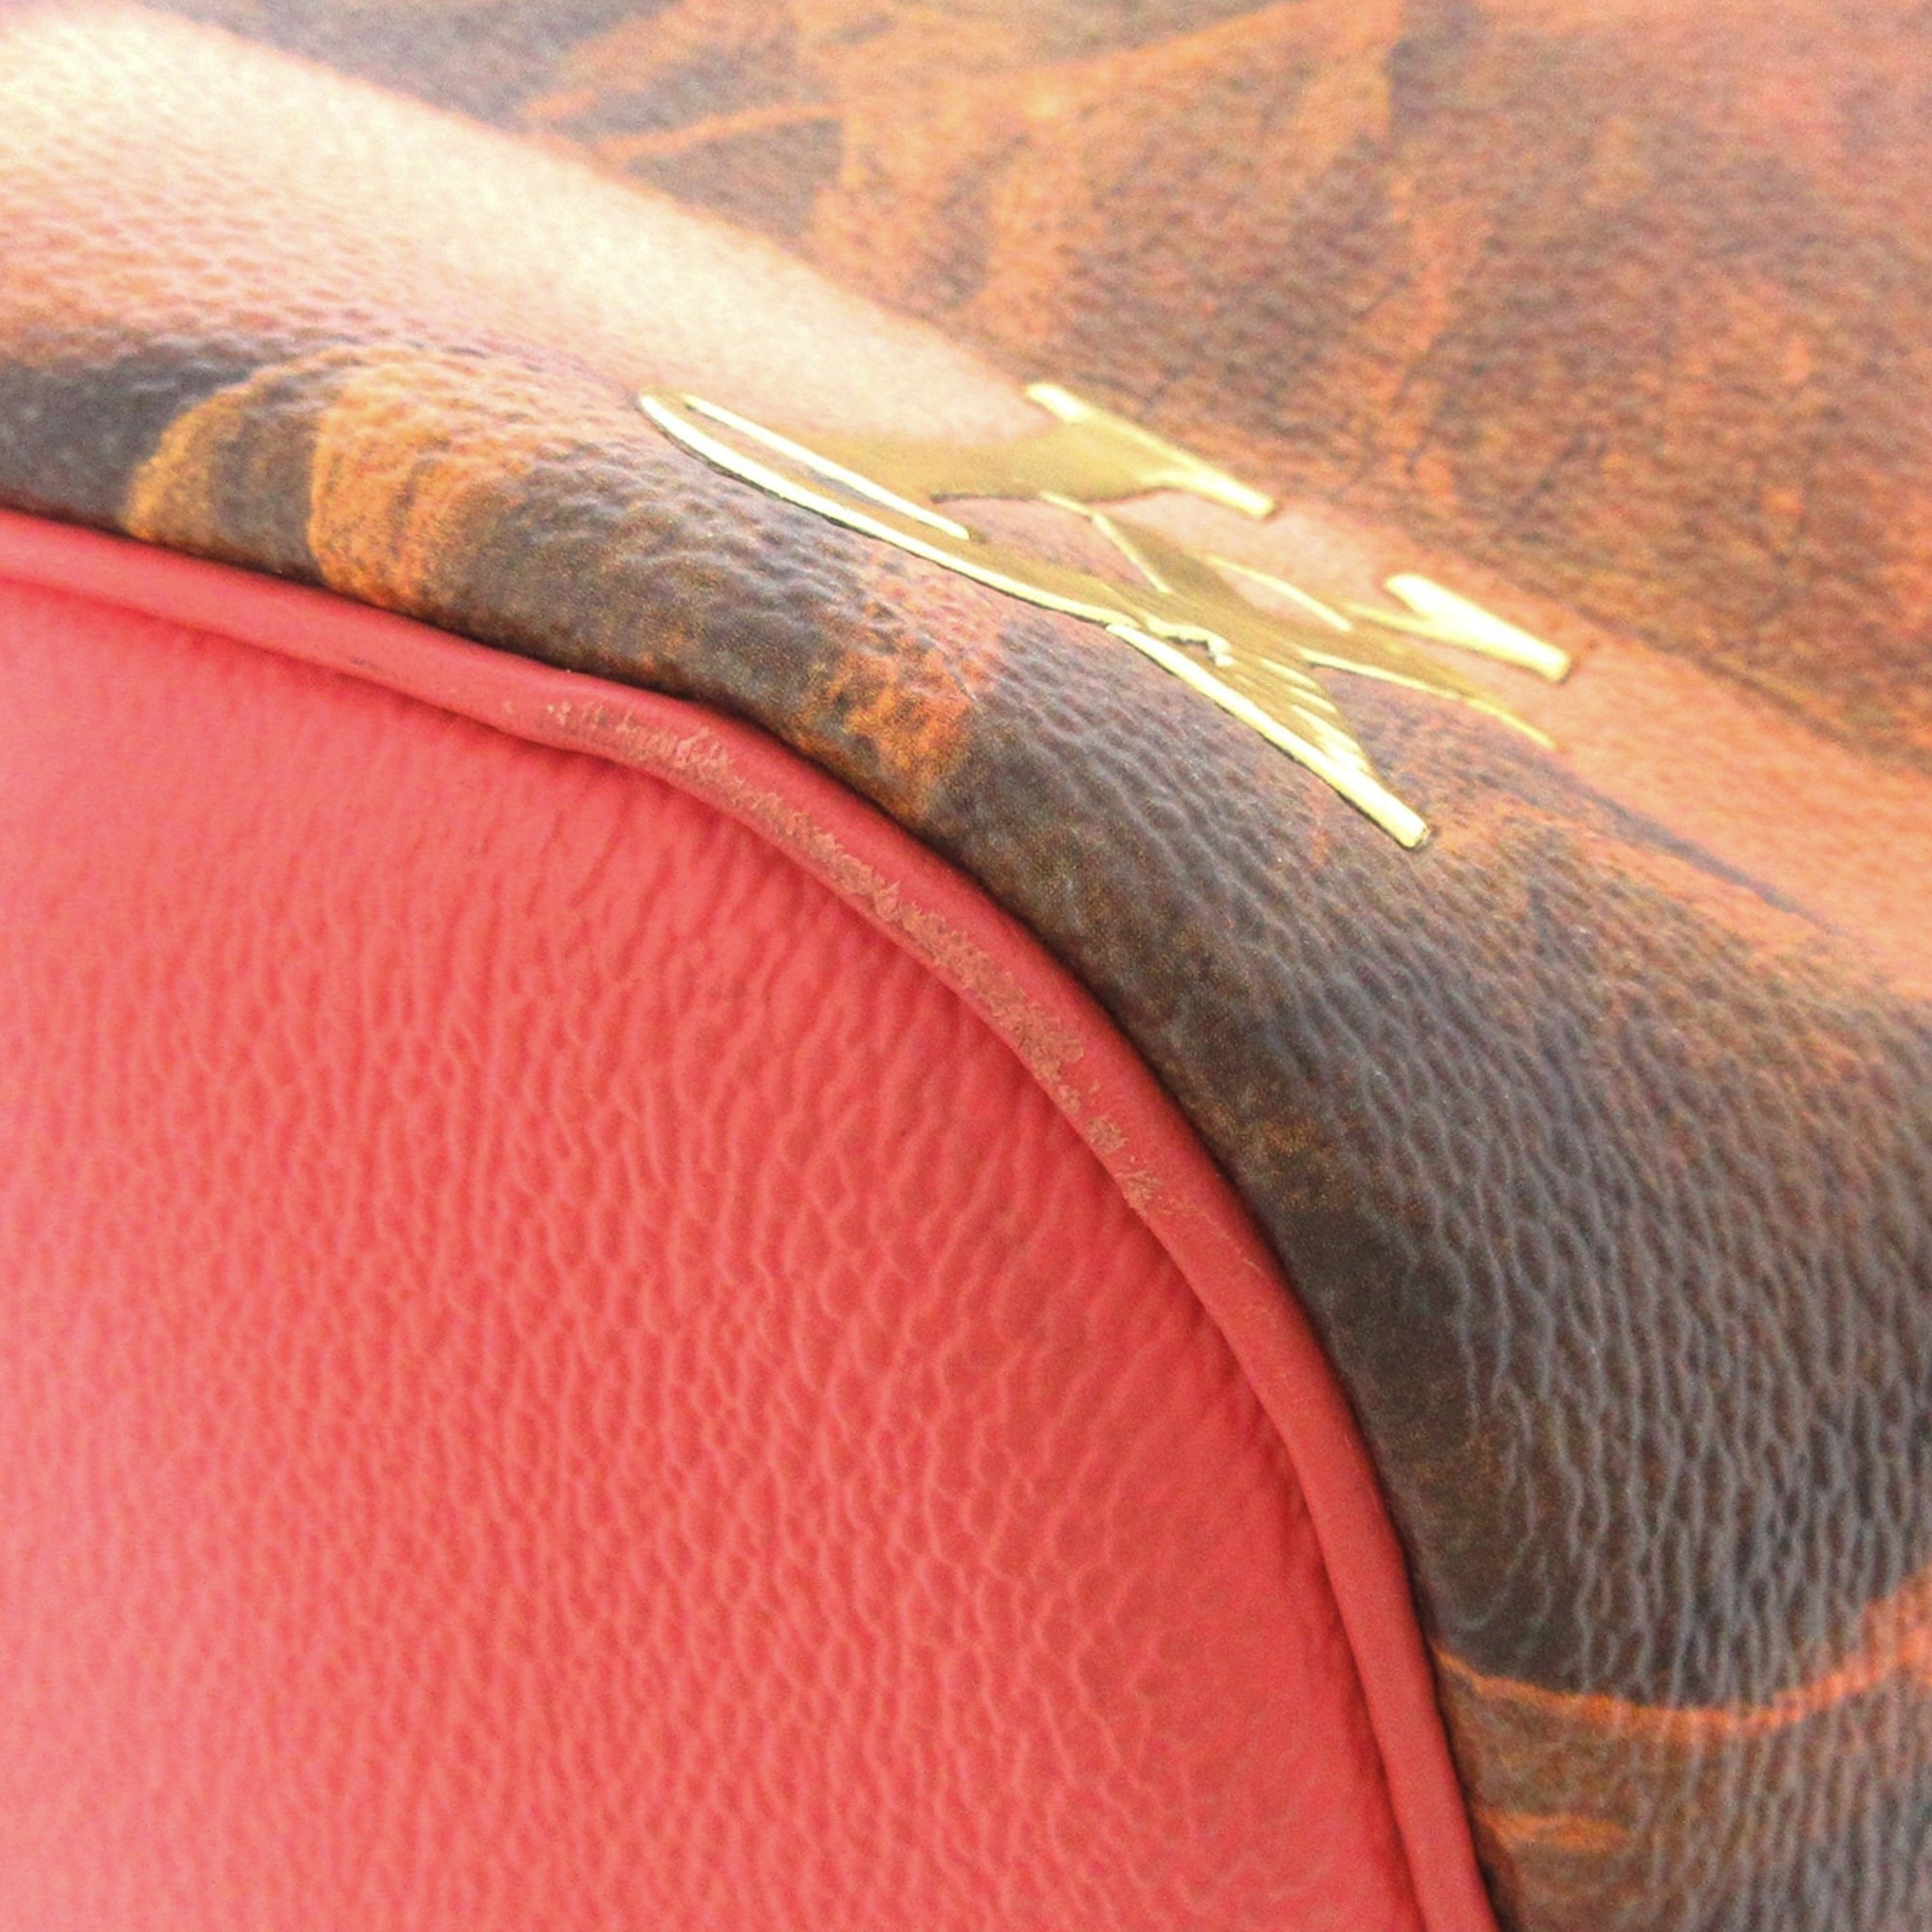 Louis Vuitton Multicolor Canvas Jeff Koons Boucher Neverfull MM Bag Louis  Vuitton